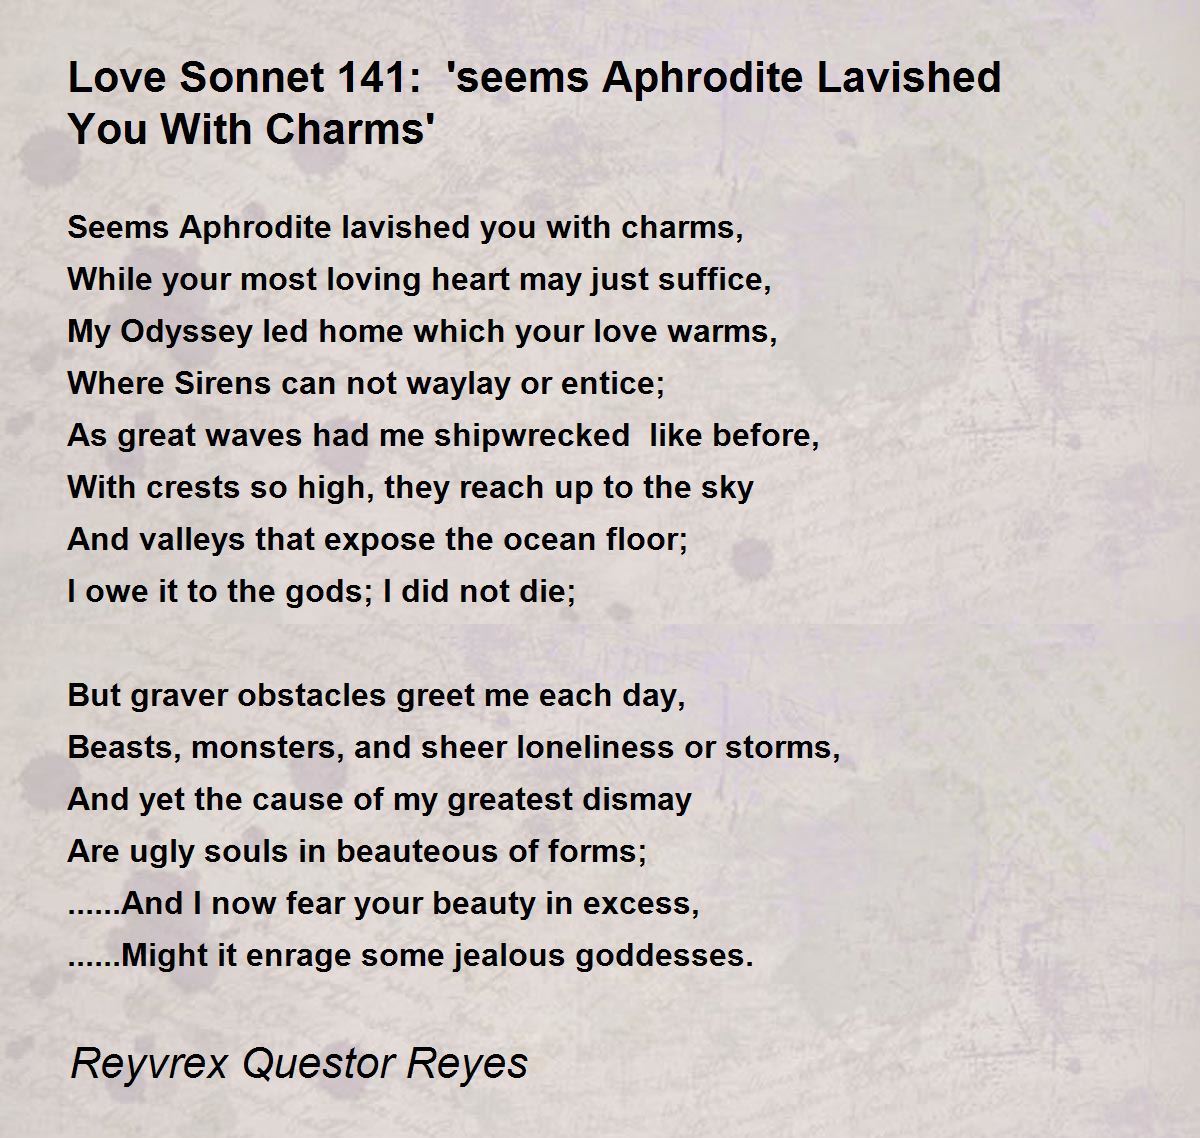 sonnet 141